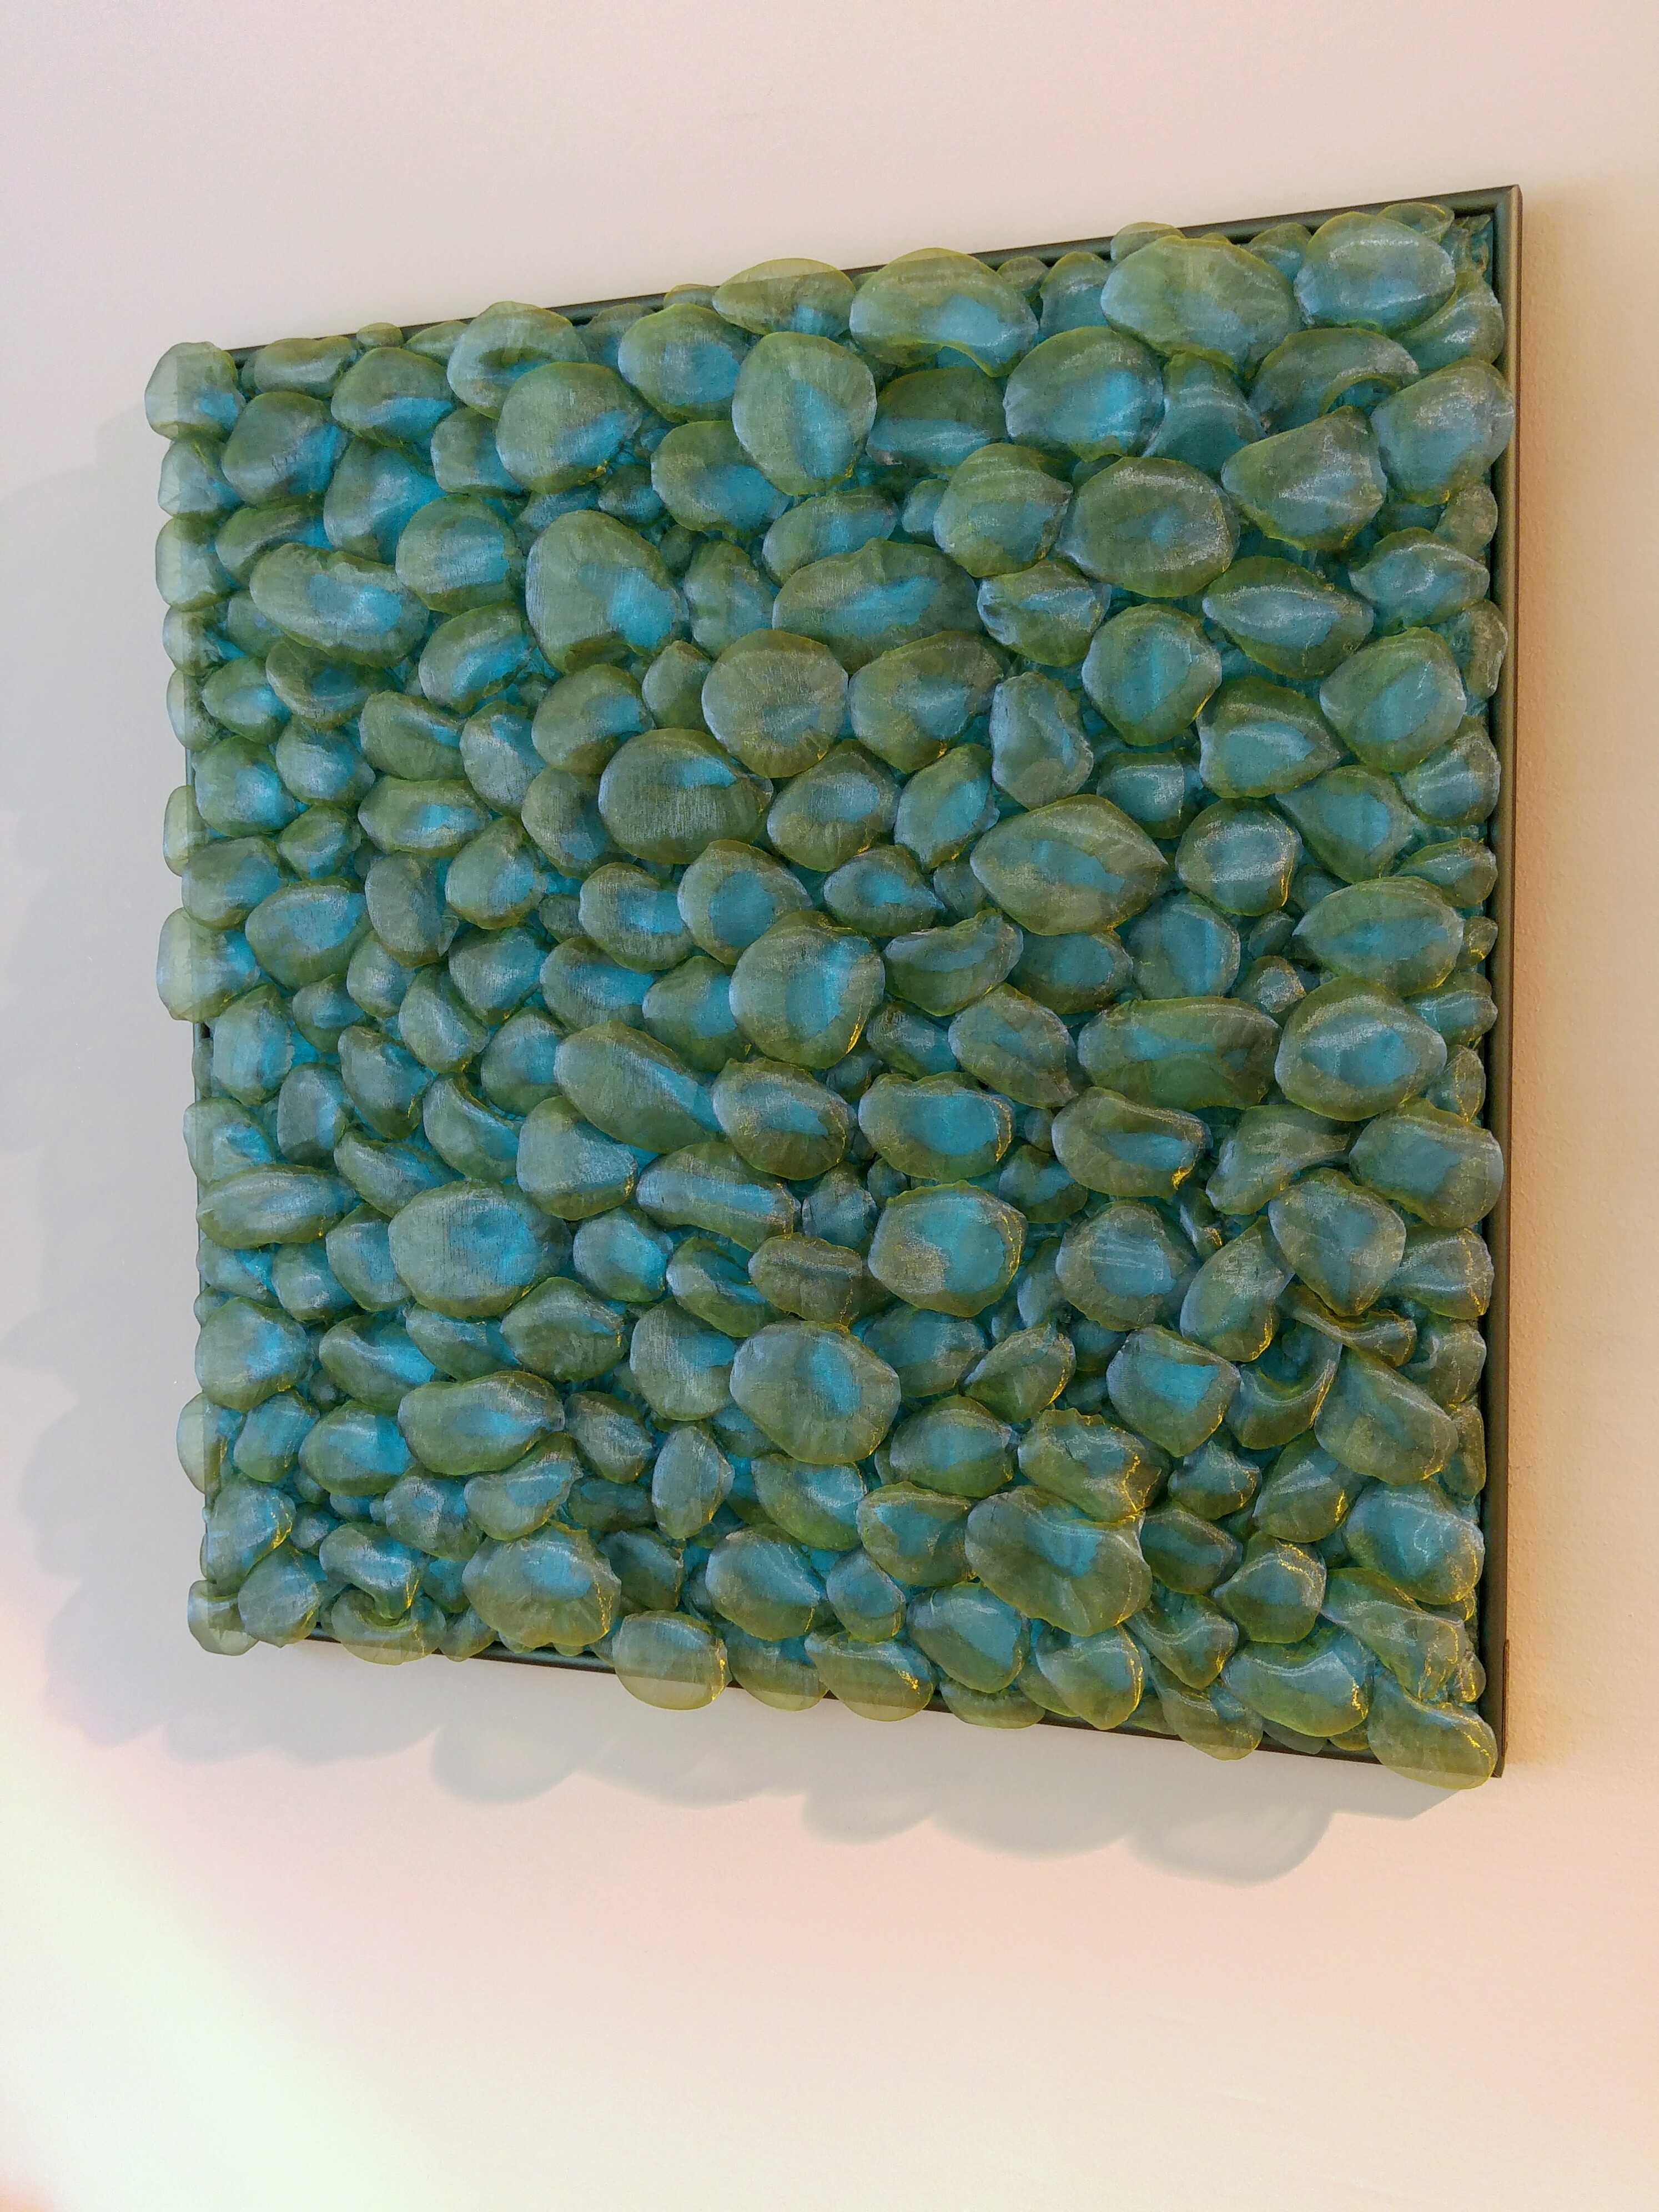 3D Textile Stones/ green-blue, transparent/ by Liivi Leppik